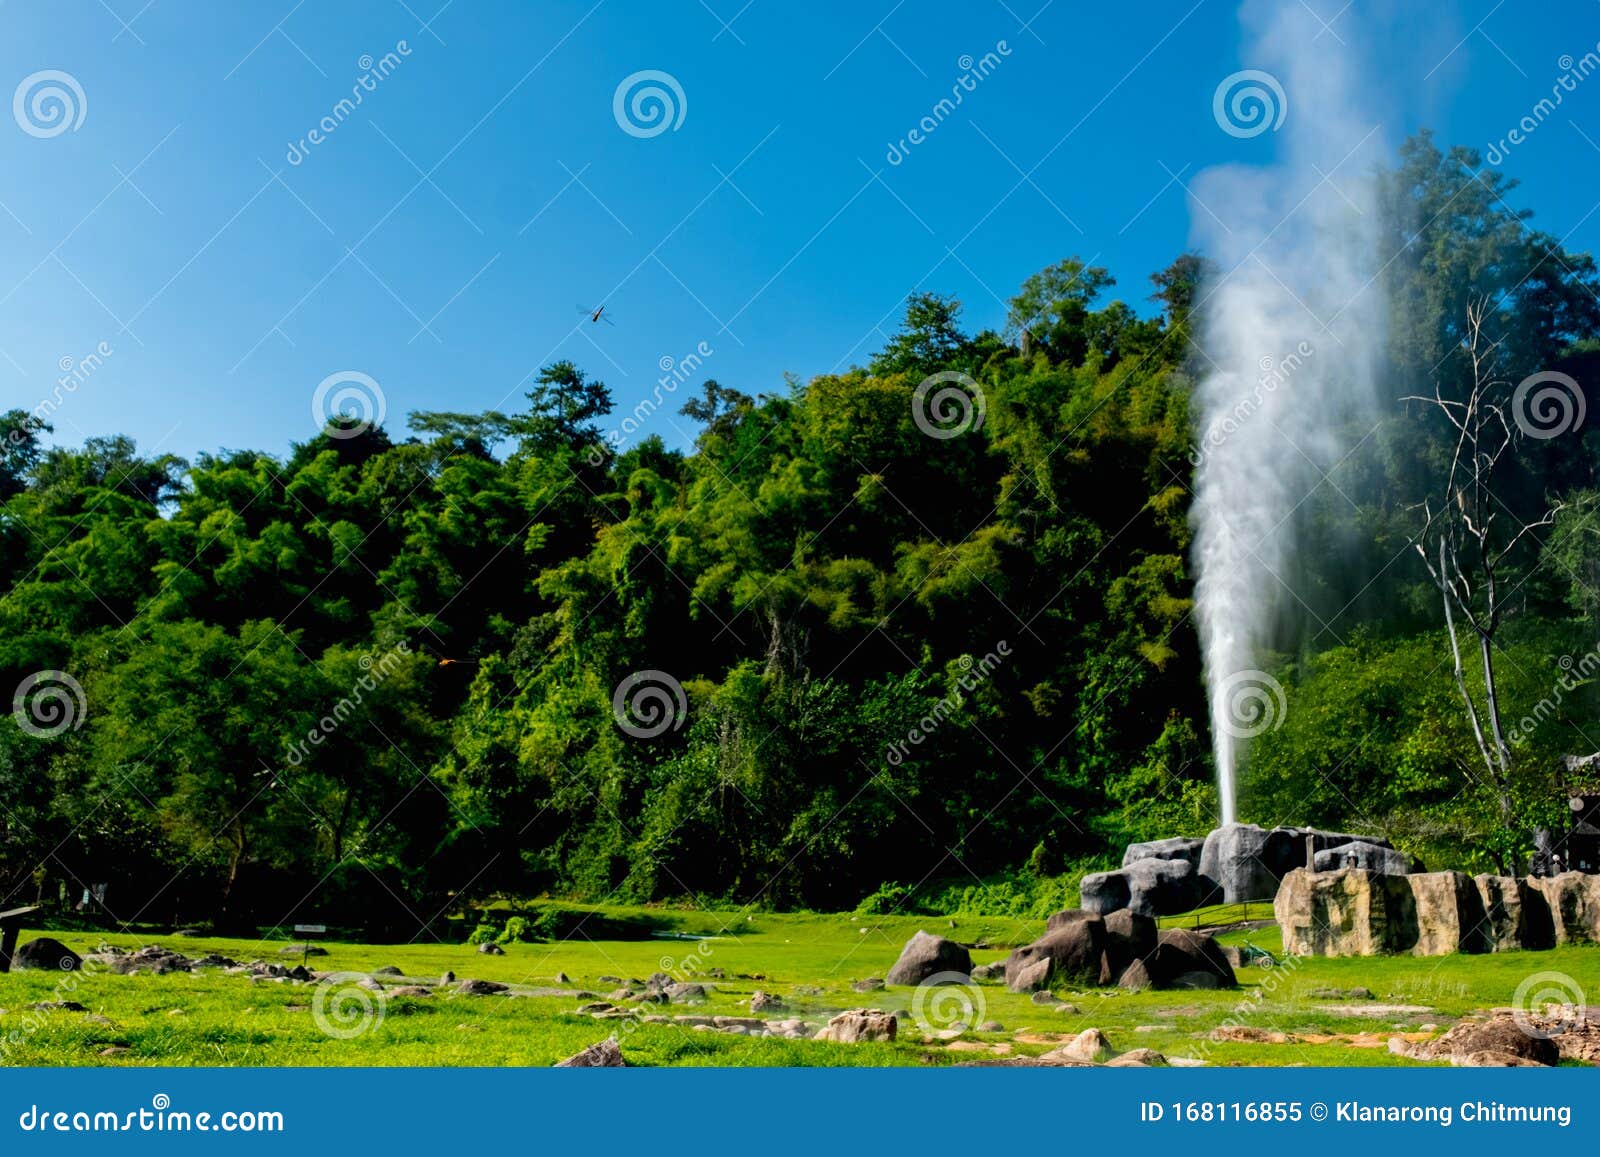 hot springs at doi pha hom pok national park, fang, chiang mai, thailand